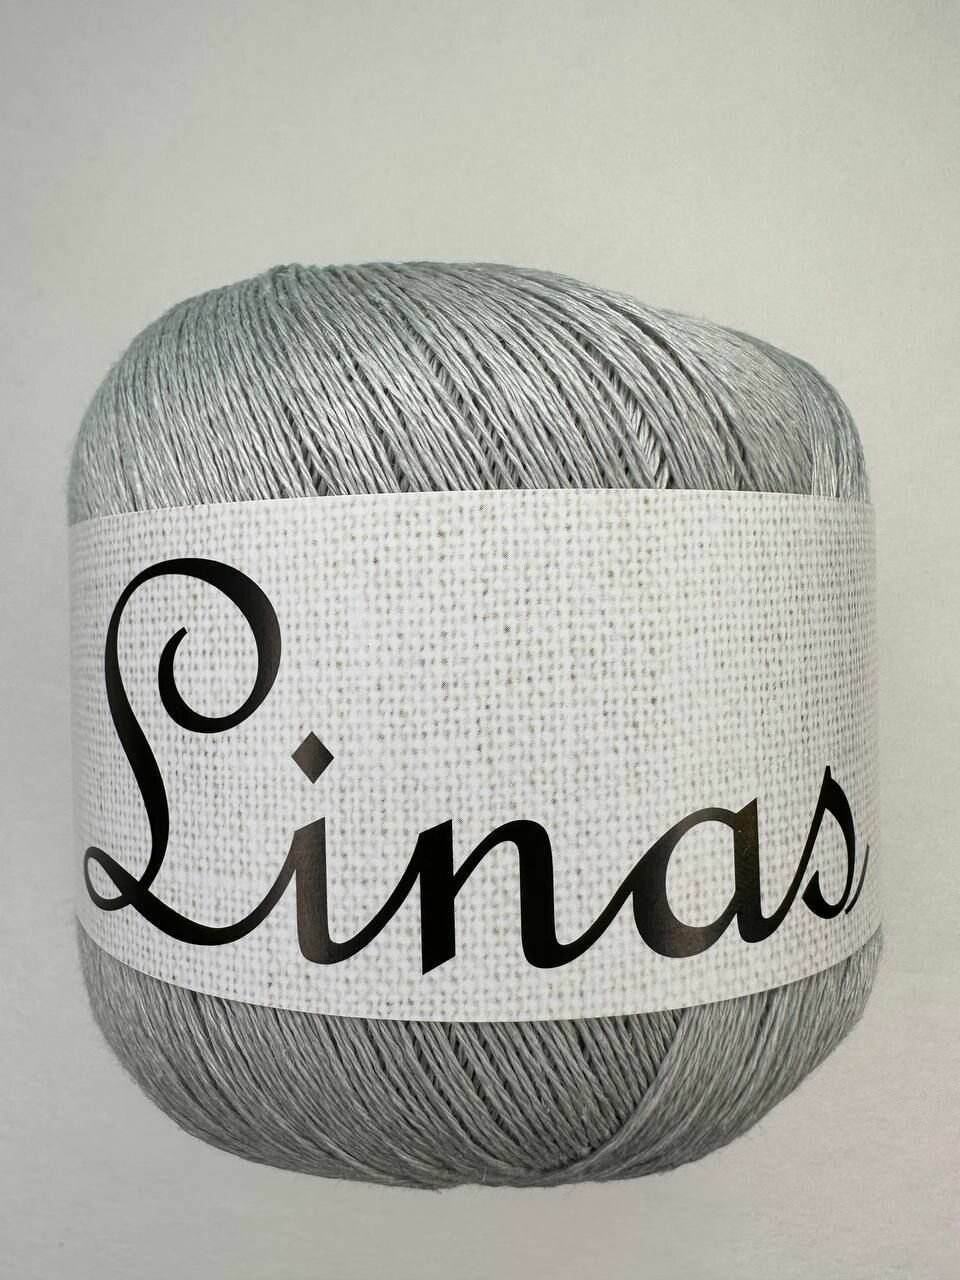 Пряжа для вязания Midara Linas, 100% лён, 2 мотка по 100 гр